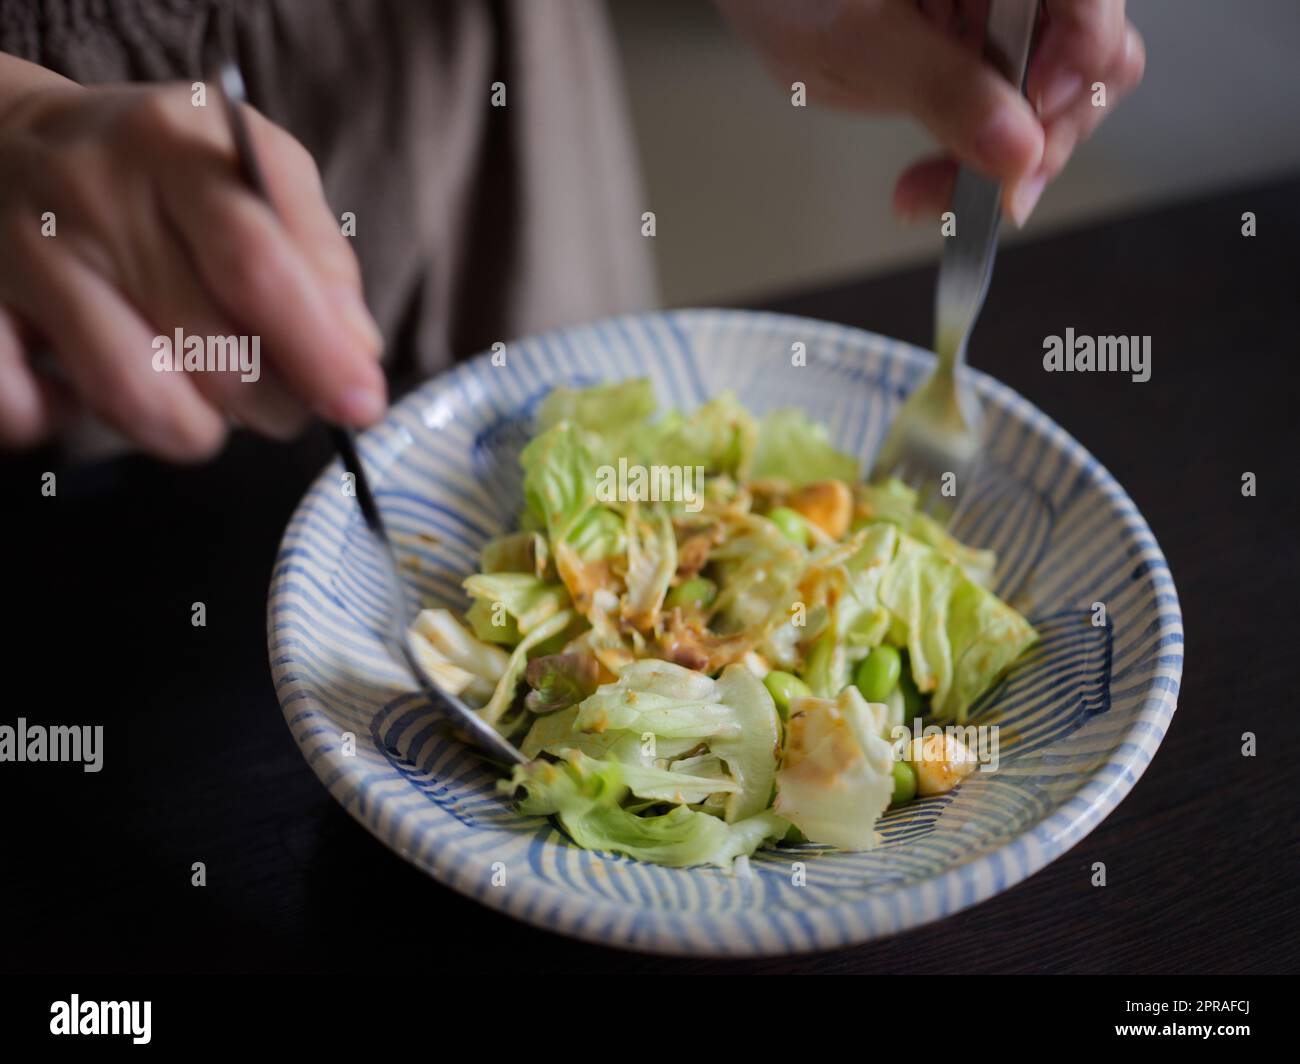 Donna che mescola deliziosi ingredienti per insalata alimentare con cucchiai in cucina Foto Stock